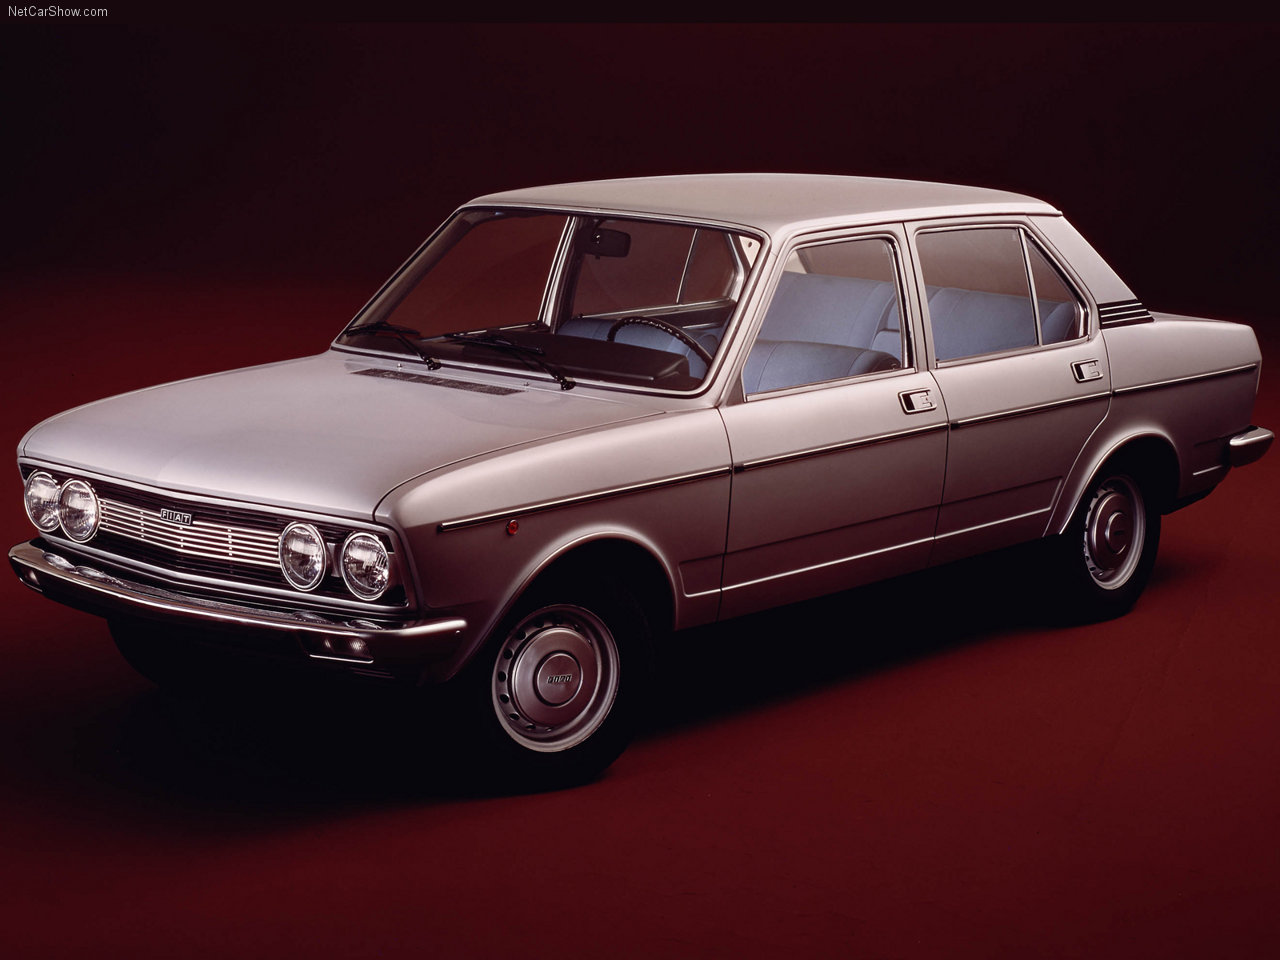 فیات 132 مدل سال 1974 میلادی که در بازار ایران نیز حضوری نسبتا موفق داشت